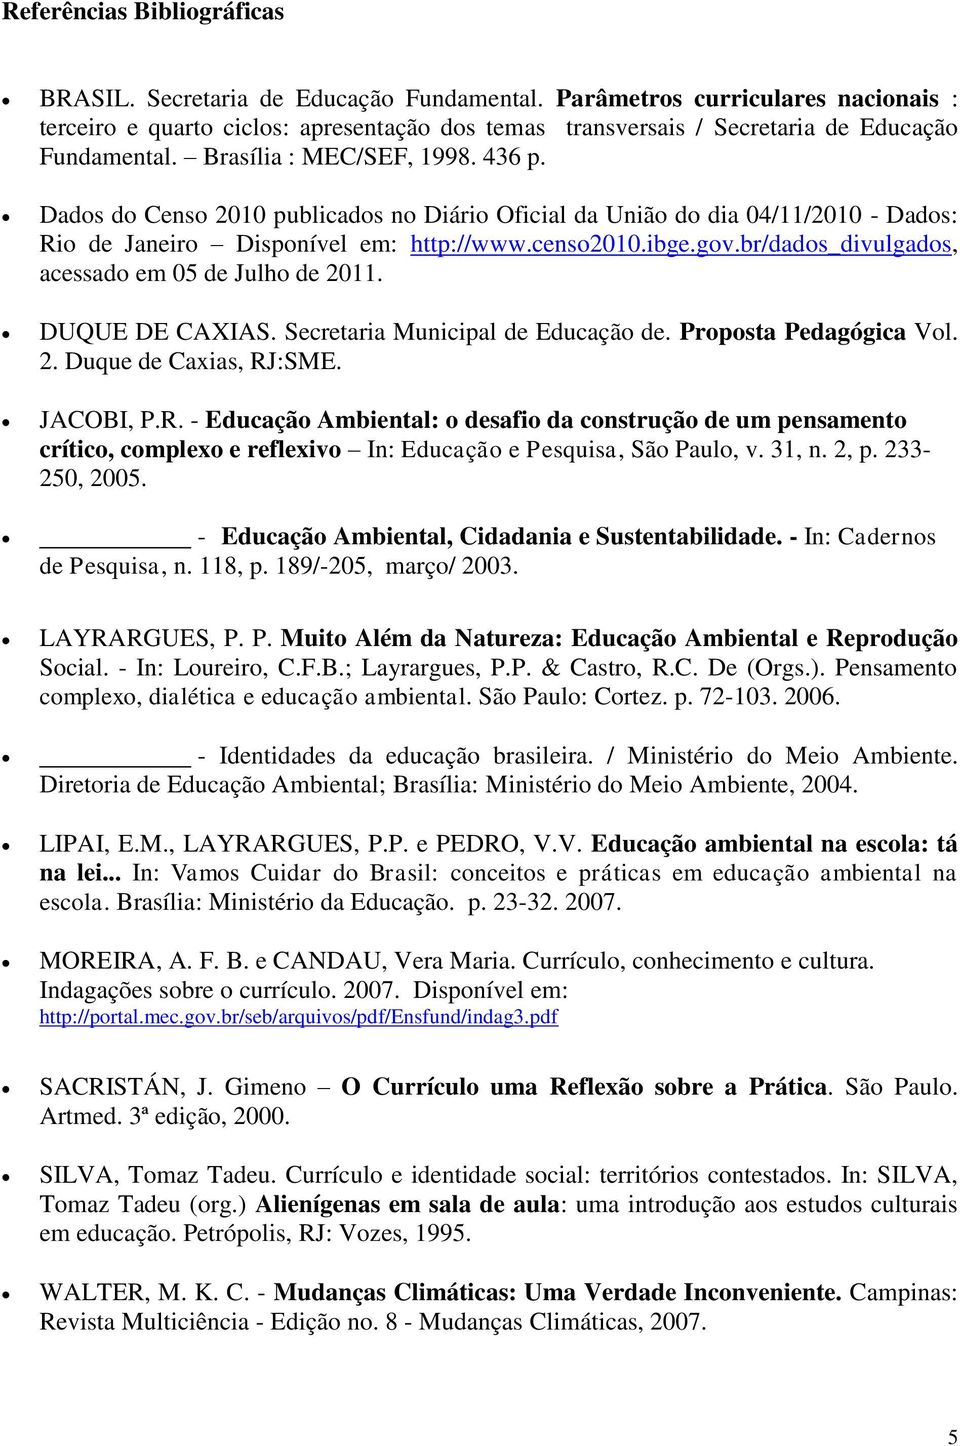 Dados do Censo 2010 publicados no Diário Oficial da União do dia 04/11/2010 - Dados: Rio de Janeiro Disponível em: http://www.censo2010.ibge.gov.br/dados_divulgados, acessado em 05 de Julho de 2011.